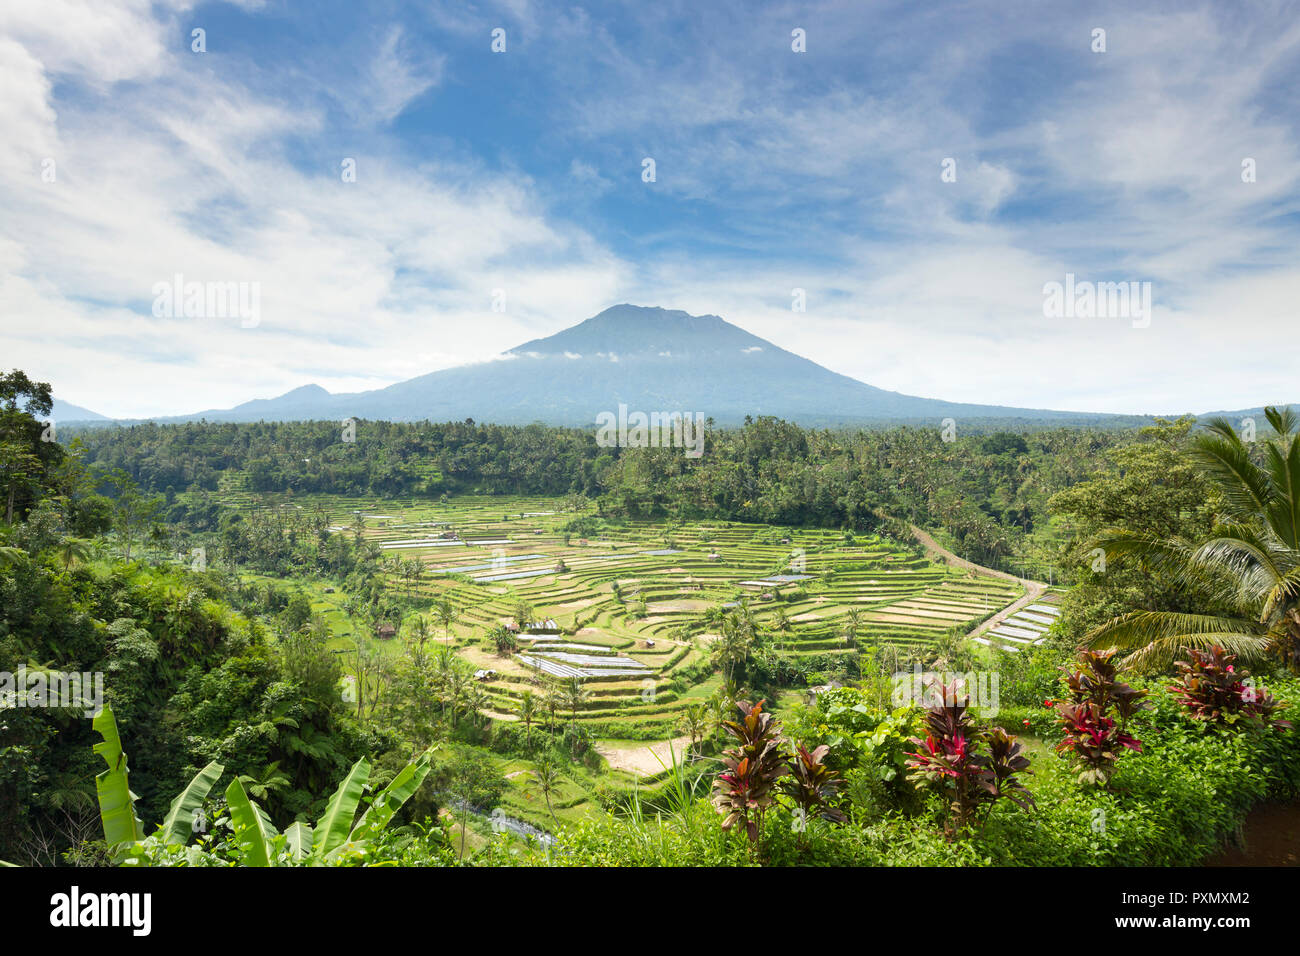 Vista de las terrazas de arroz y el Volcán Gunung Agung, Rendang, Bali, Indonesia Foto de stock